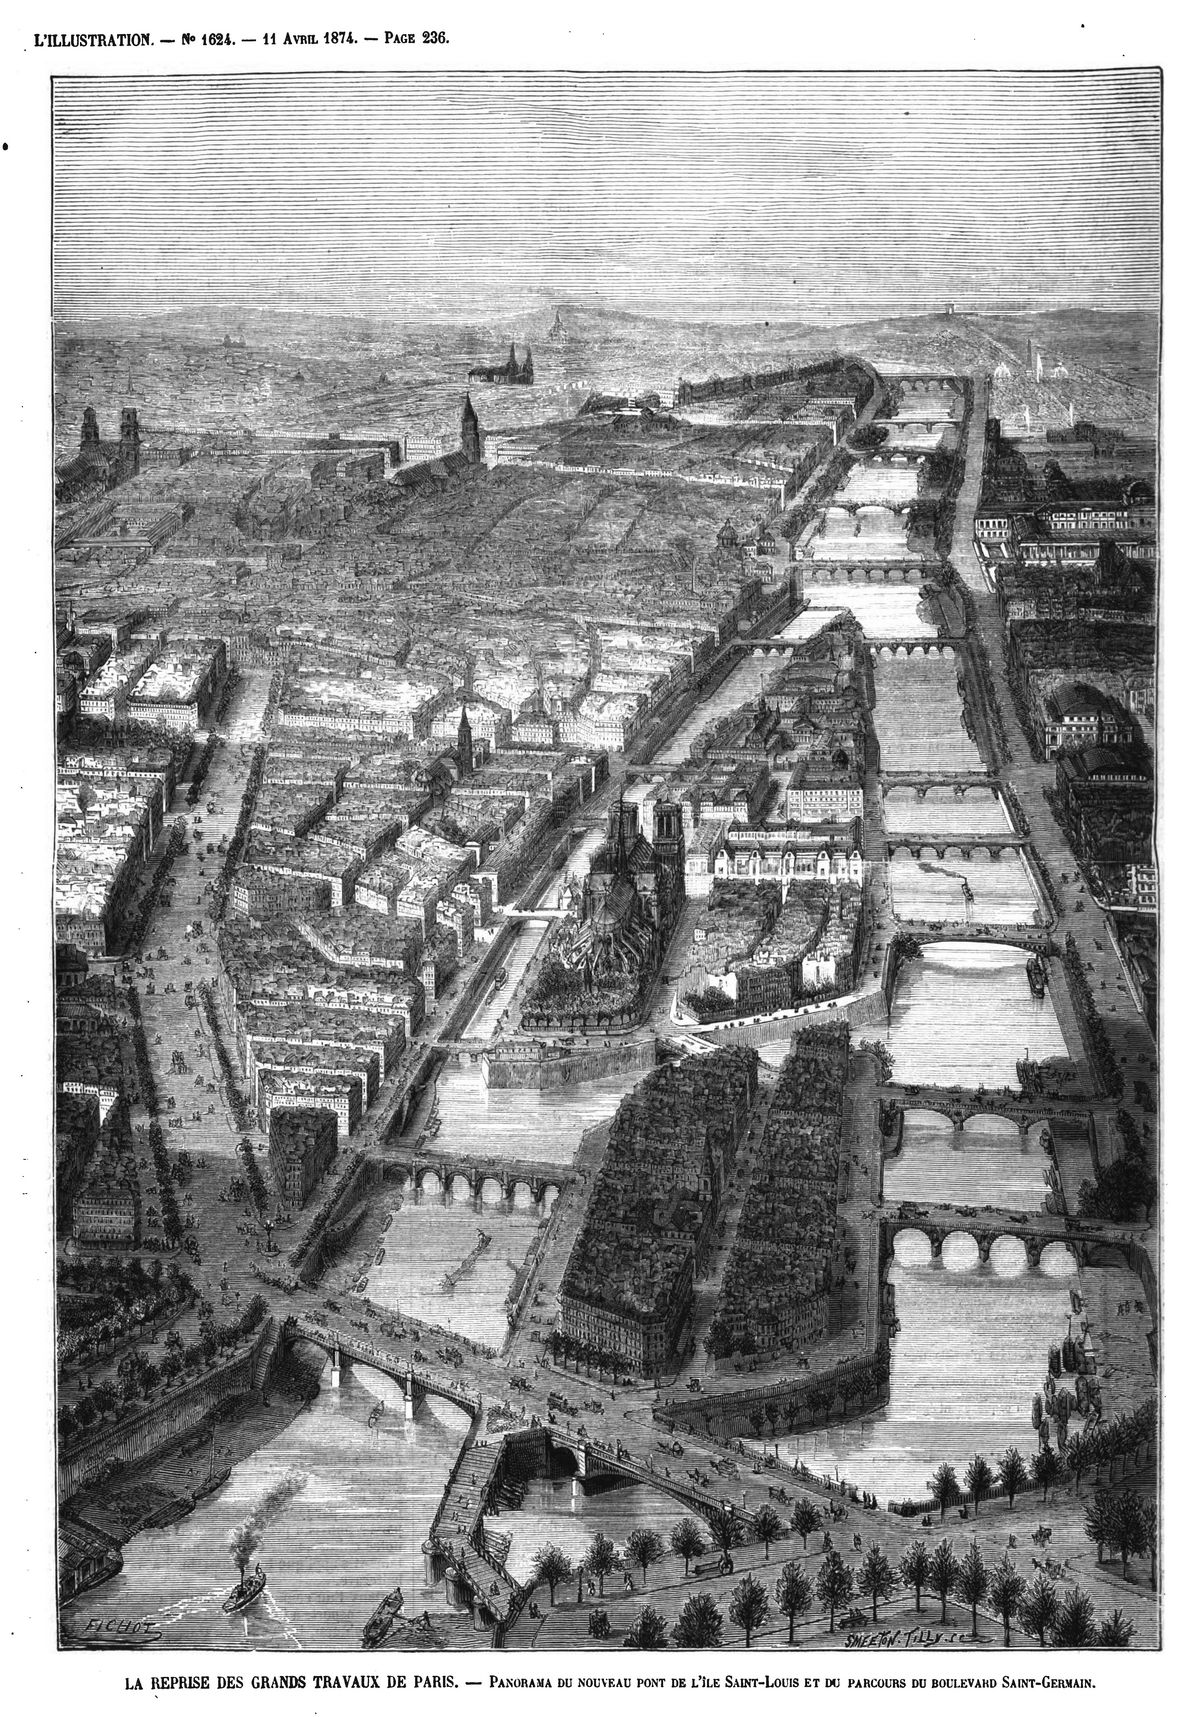 La reprise des grands travaux de Paris : panorama du nouveau pont de l’ile Saint-Louis et du parcours du boulevard St-Germain. (gravure 1874)